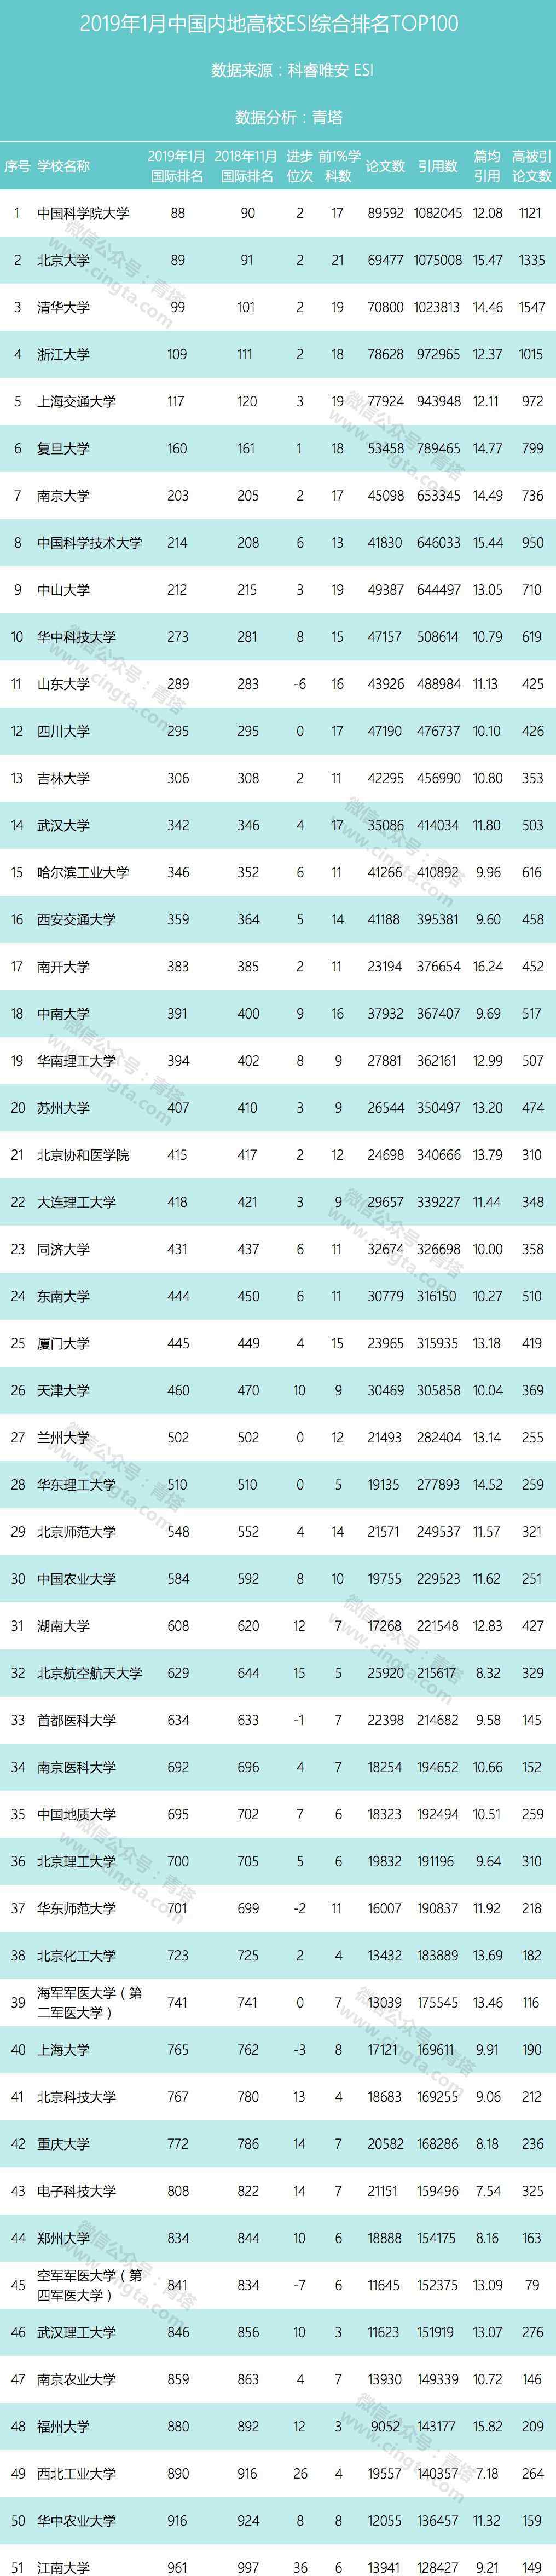 中国100大学 2019中国大学排行榜TOP100